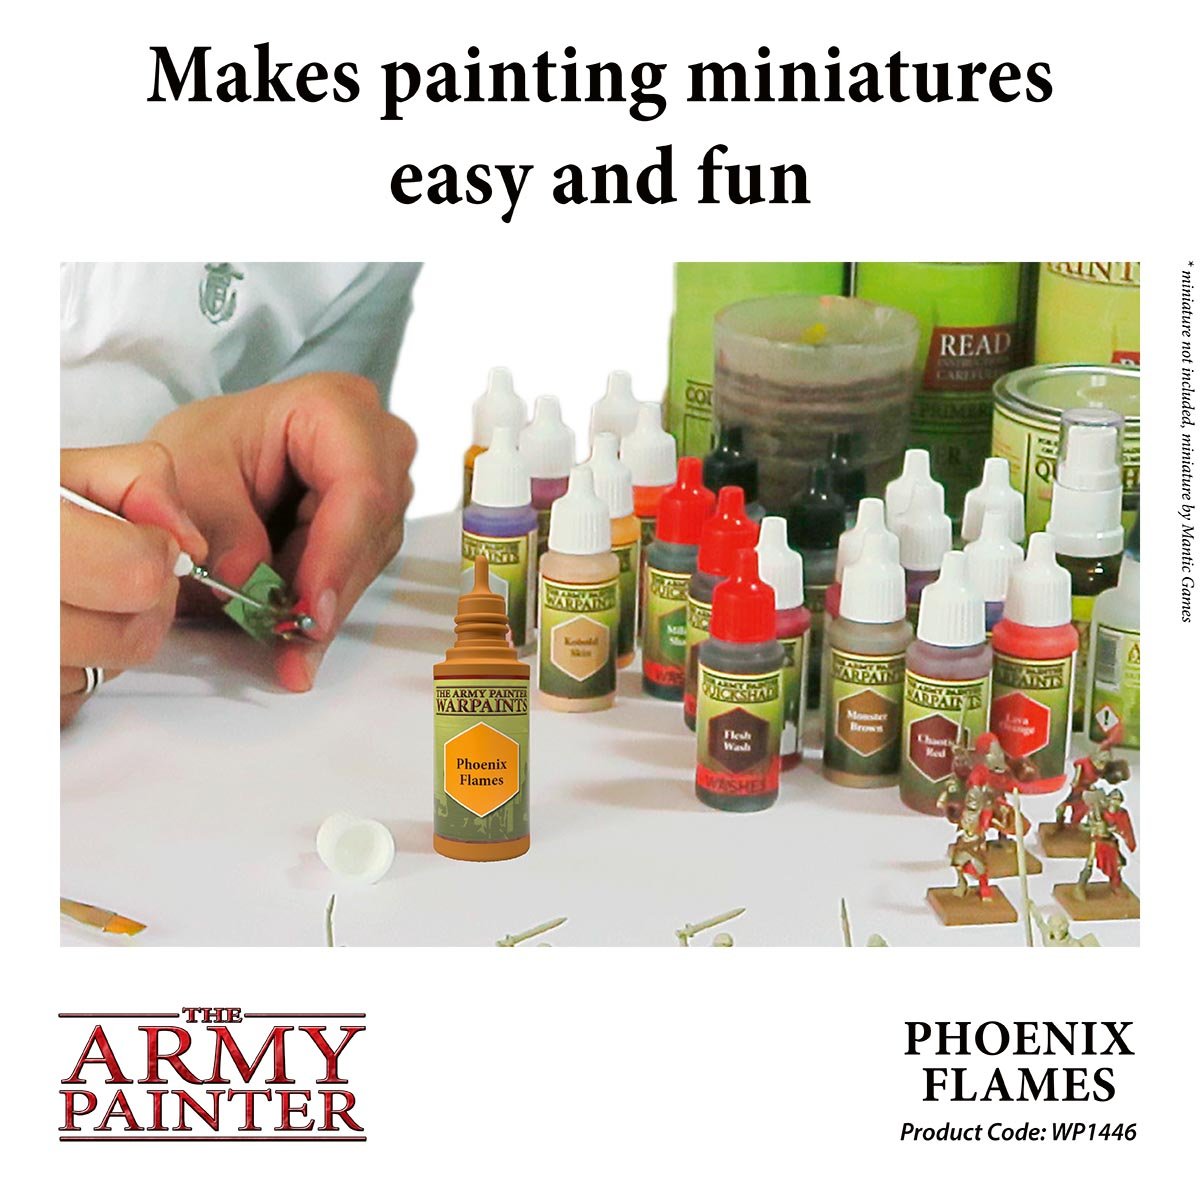 The Army Painter Warpaints WP1446 Phoenix Flames Acrylic Paint 18ml bottle